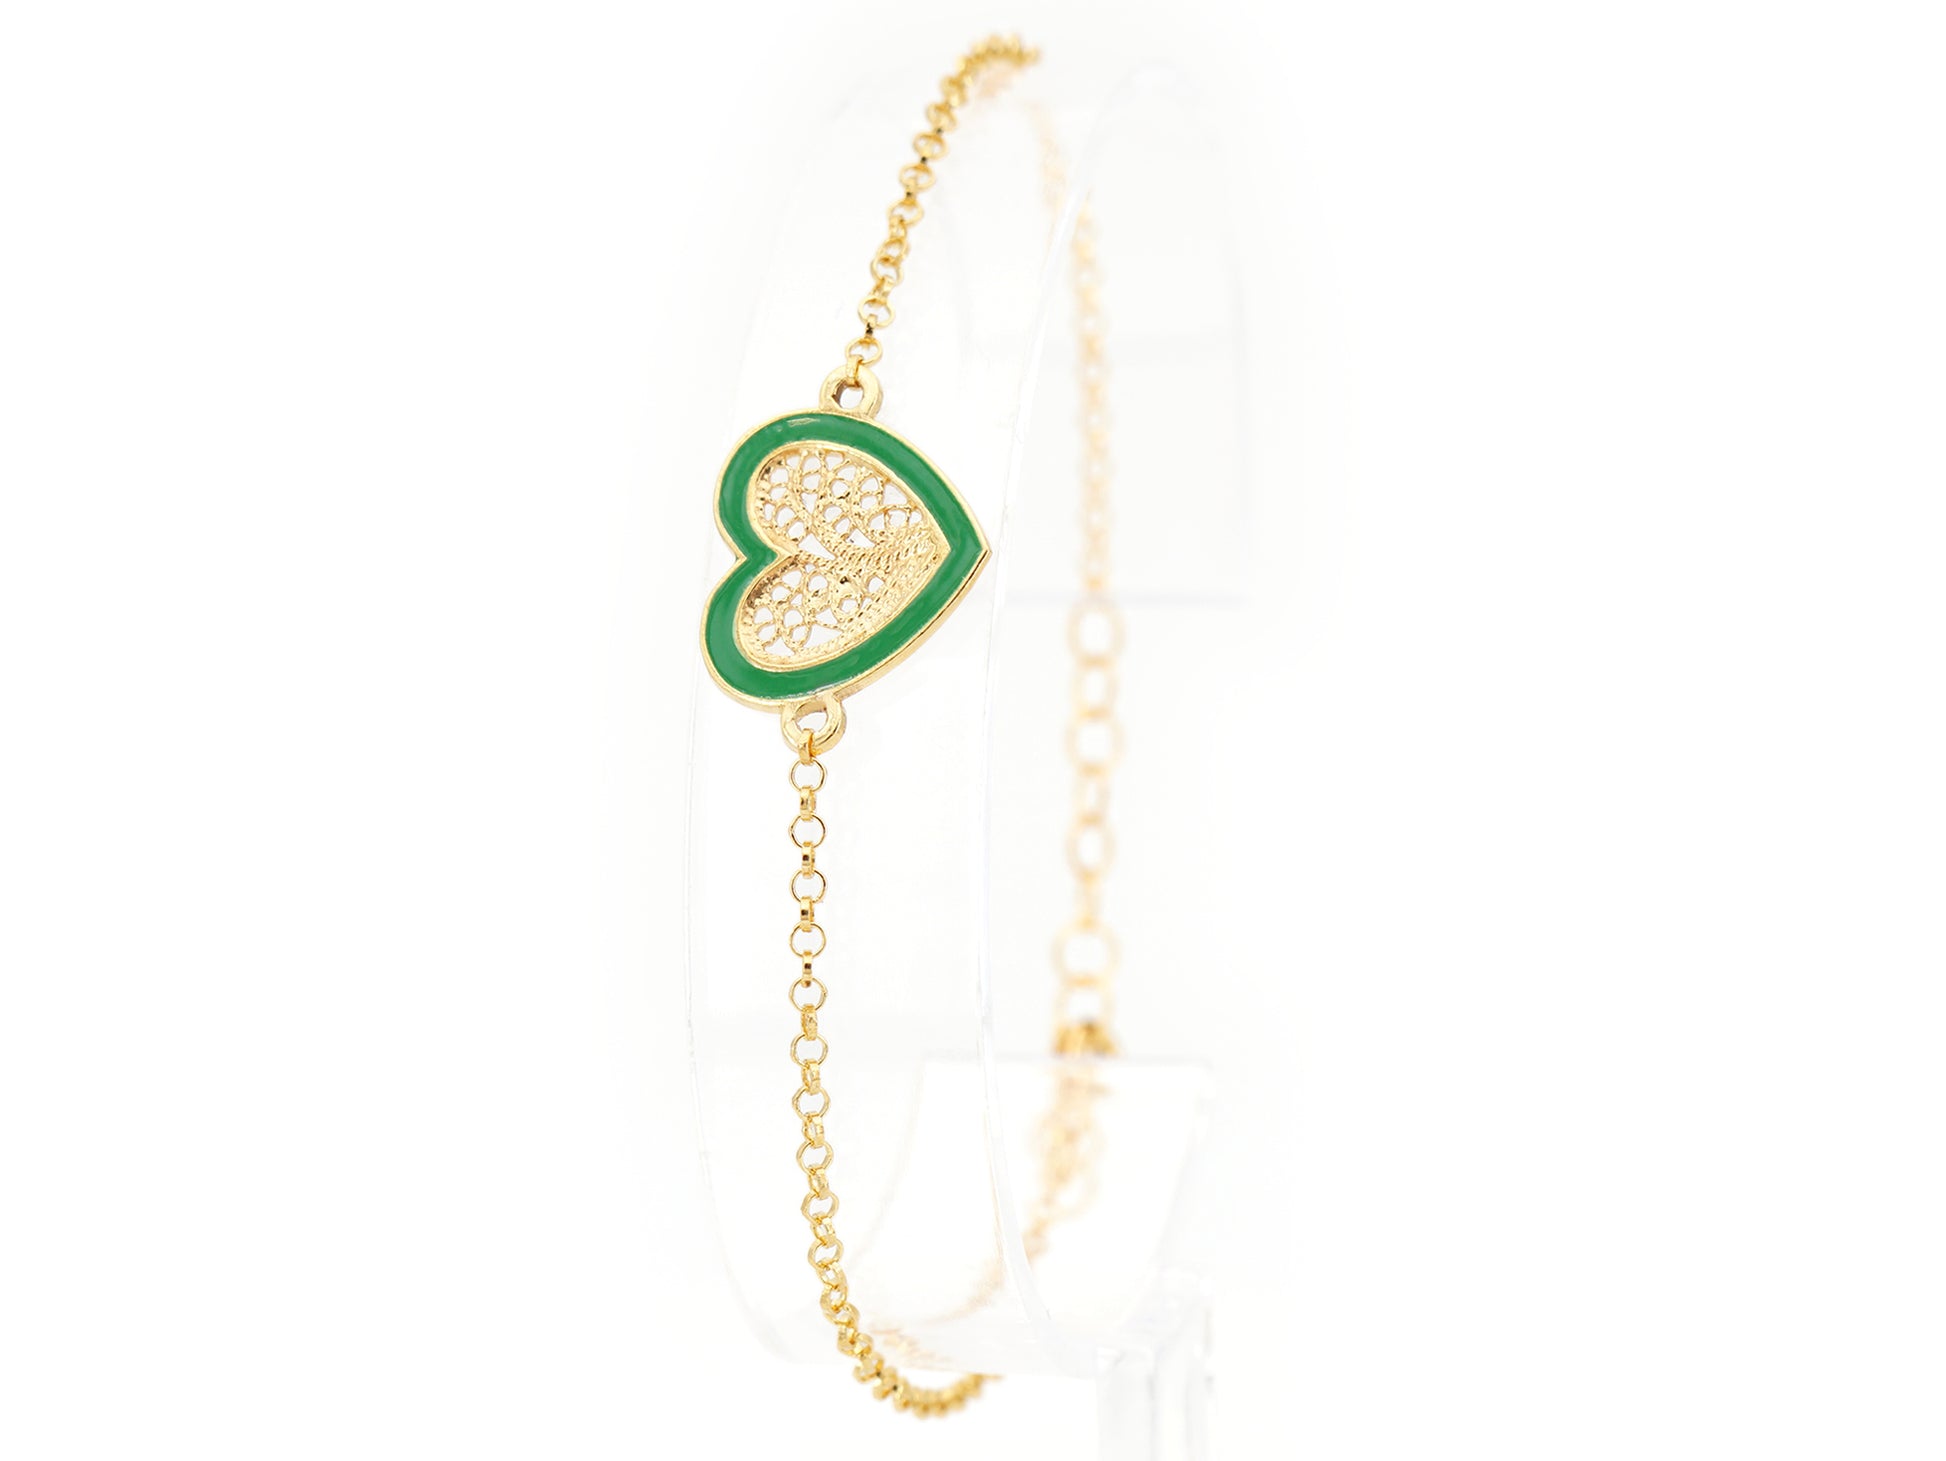 Pulseira Coração Médio Esmalte Verde, Filigrana Portuguesa, Prata de Lei 925 Dourada - Pulseira em exposição